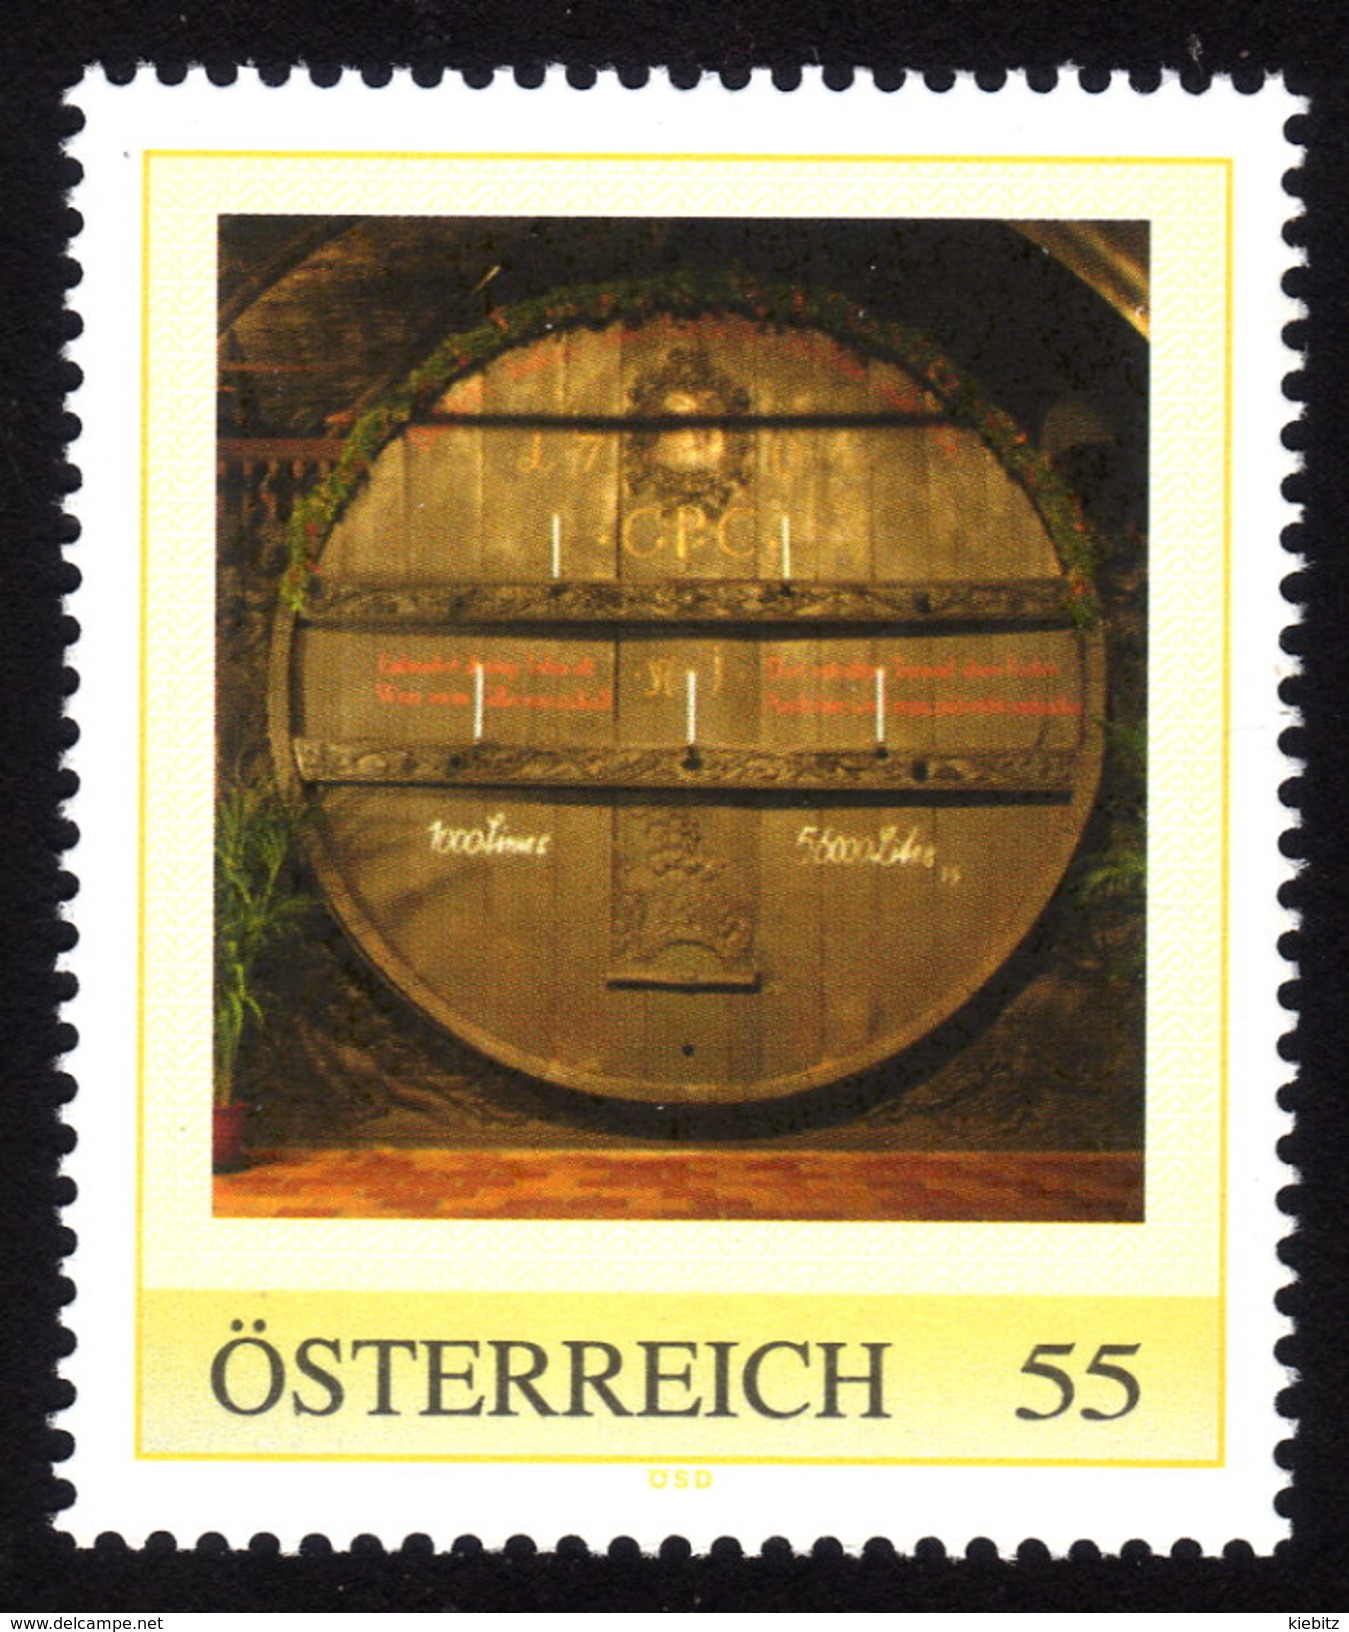 ÖSTERREICH 2009 ** Wein, Weinfass, Tausendeimerfass Vom Jahr 1704 - PM Personalized Stamp MNH - Wein & Alkohol